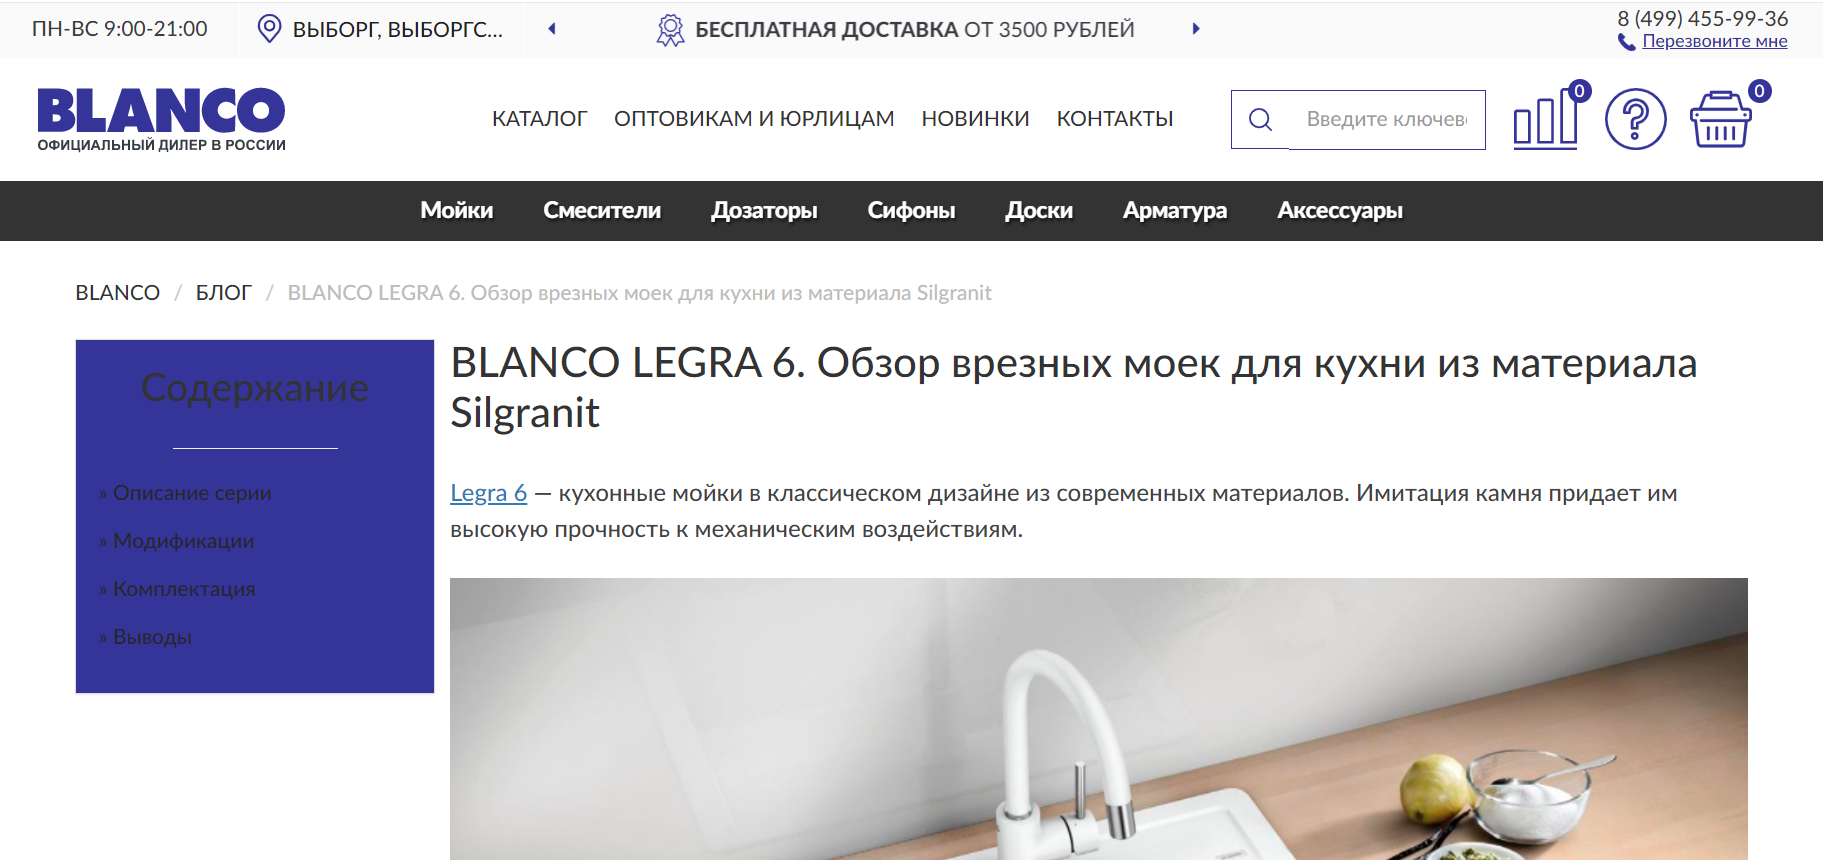 Blanco Legra 6. Обзор врезных моек для кухни из материала Silgranit 